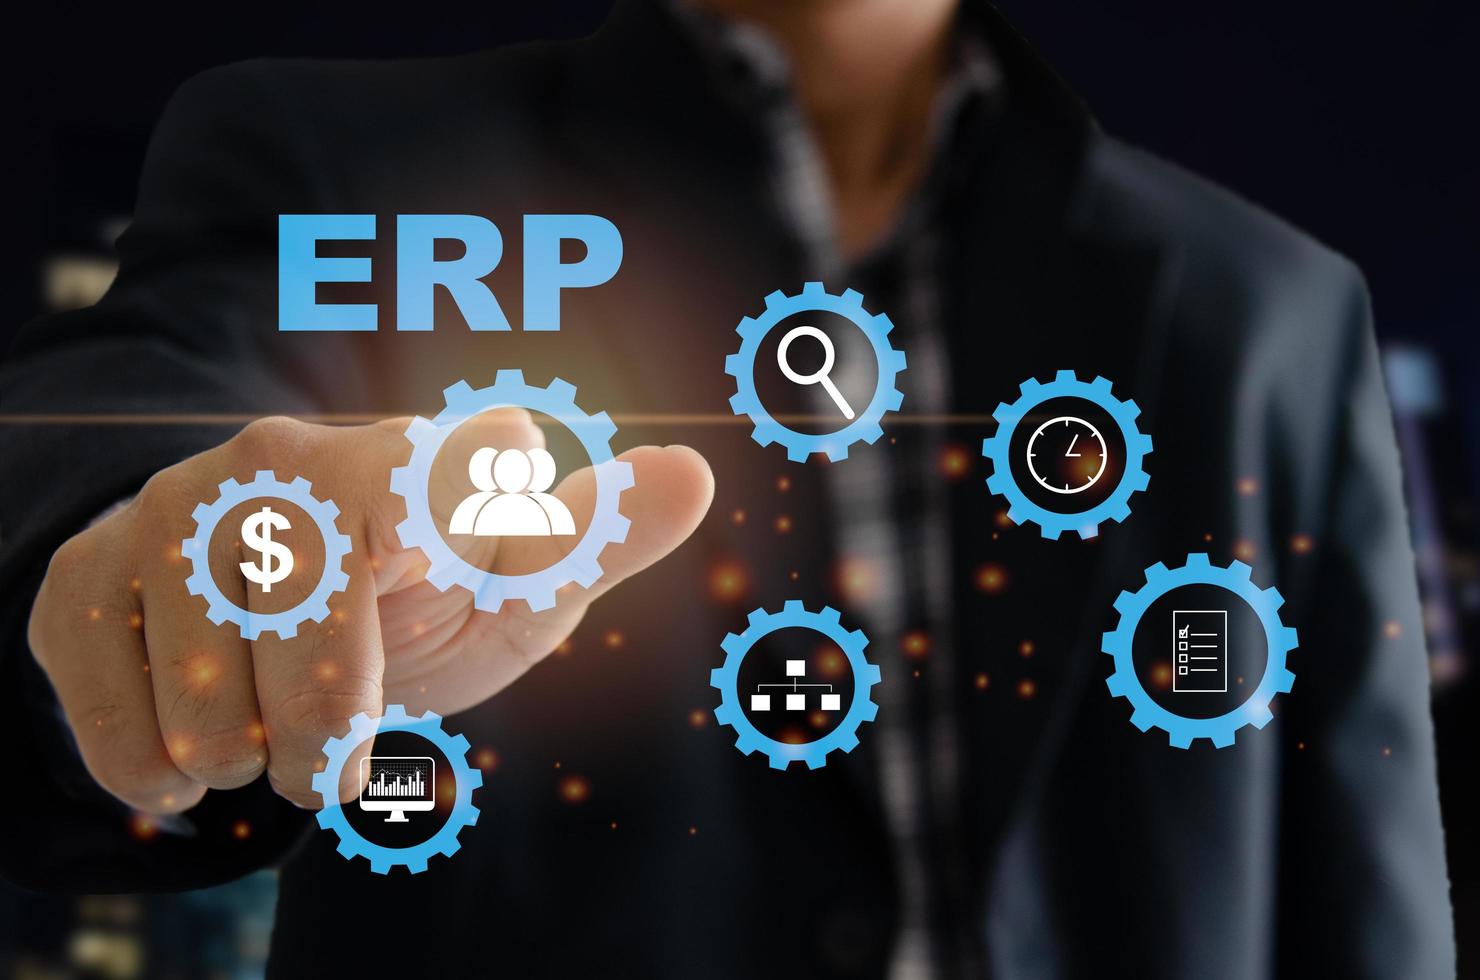 système logiciel ERP de planification des ressources d'entreprise pour les plans de ressources d'entreprise. la main d'un homme touche le mot erp sur un écran virtuel. photo